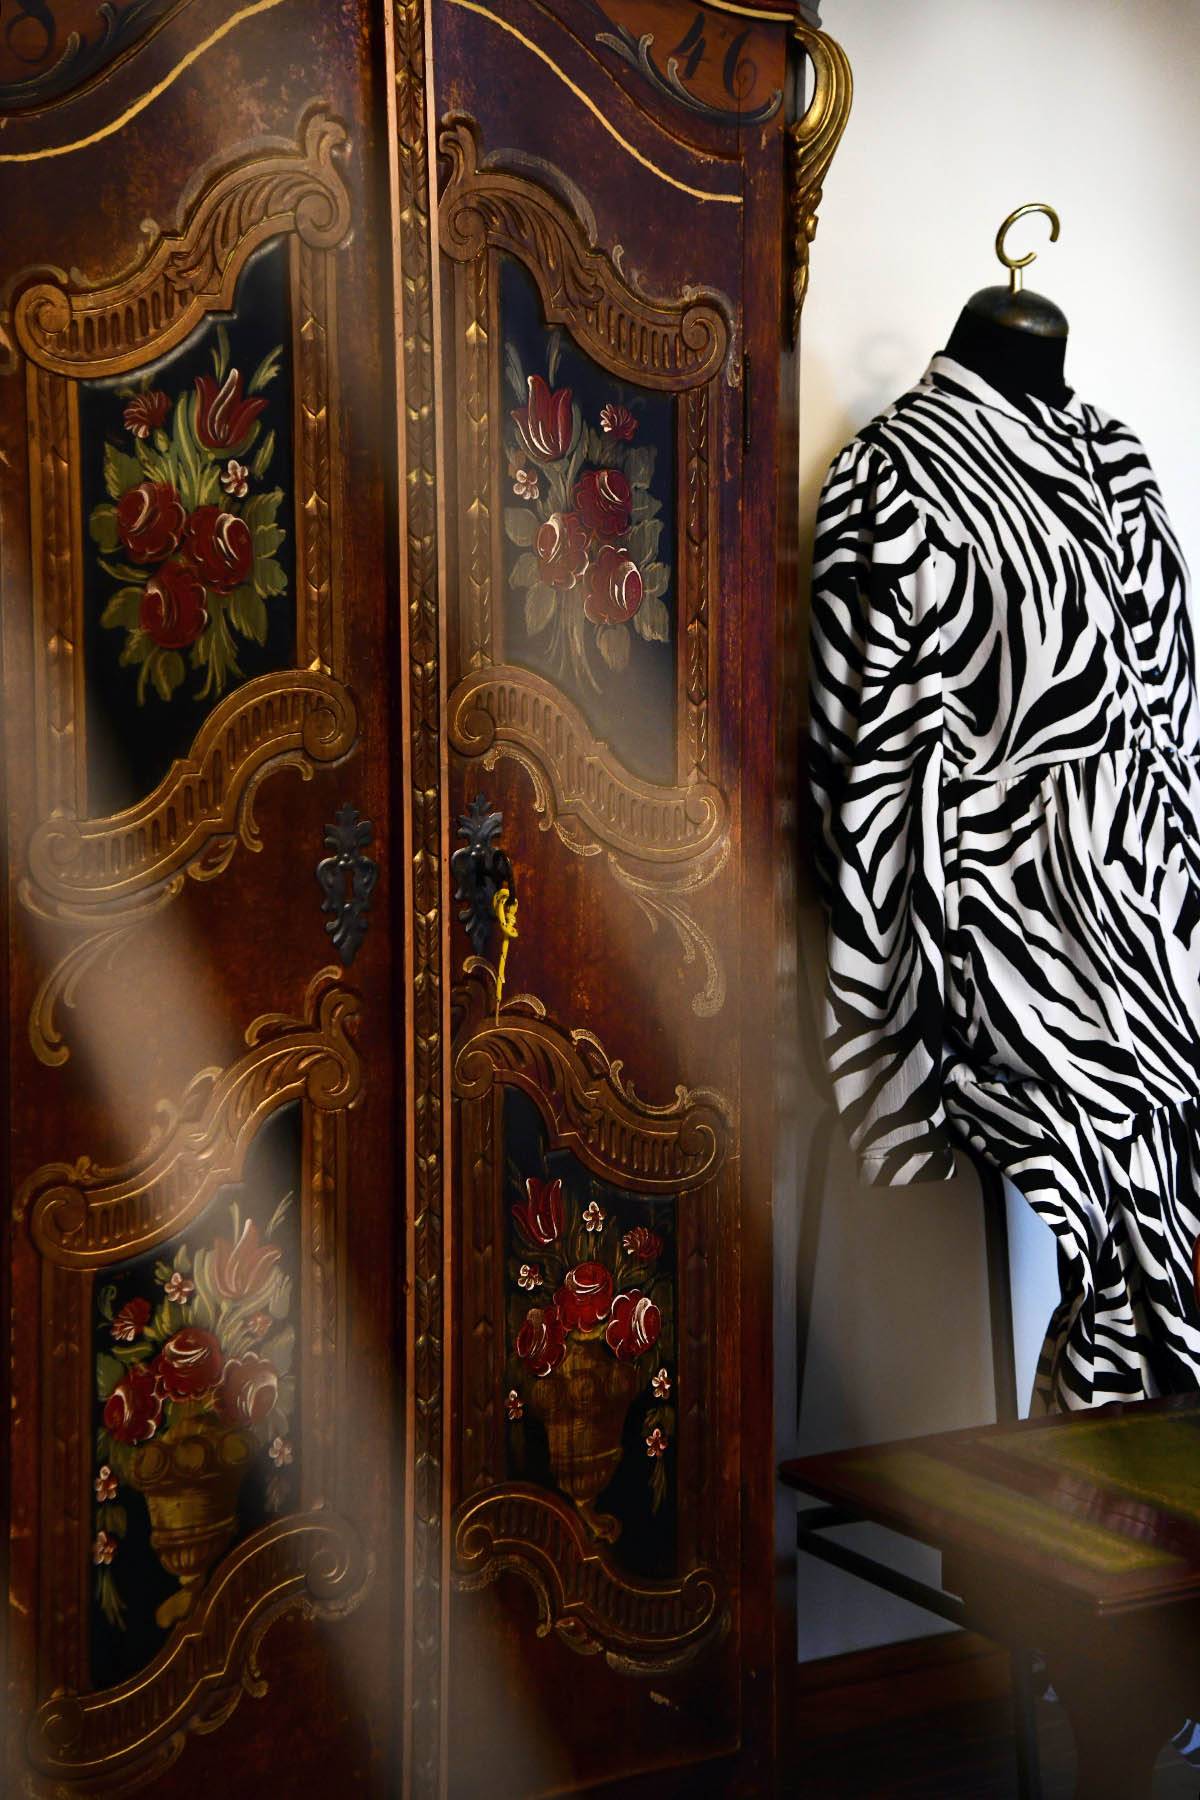 Oaza turske mode "Poyraz fashion" otvorila je svoja vrata u Lovranu